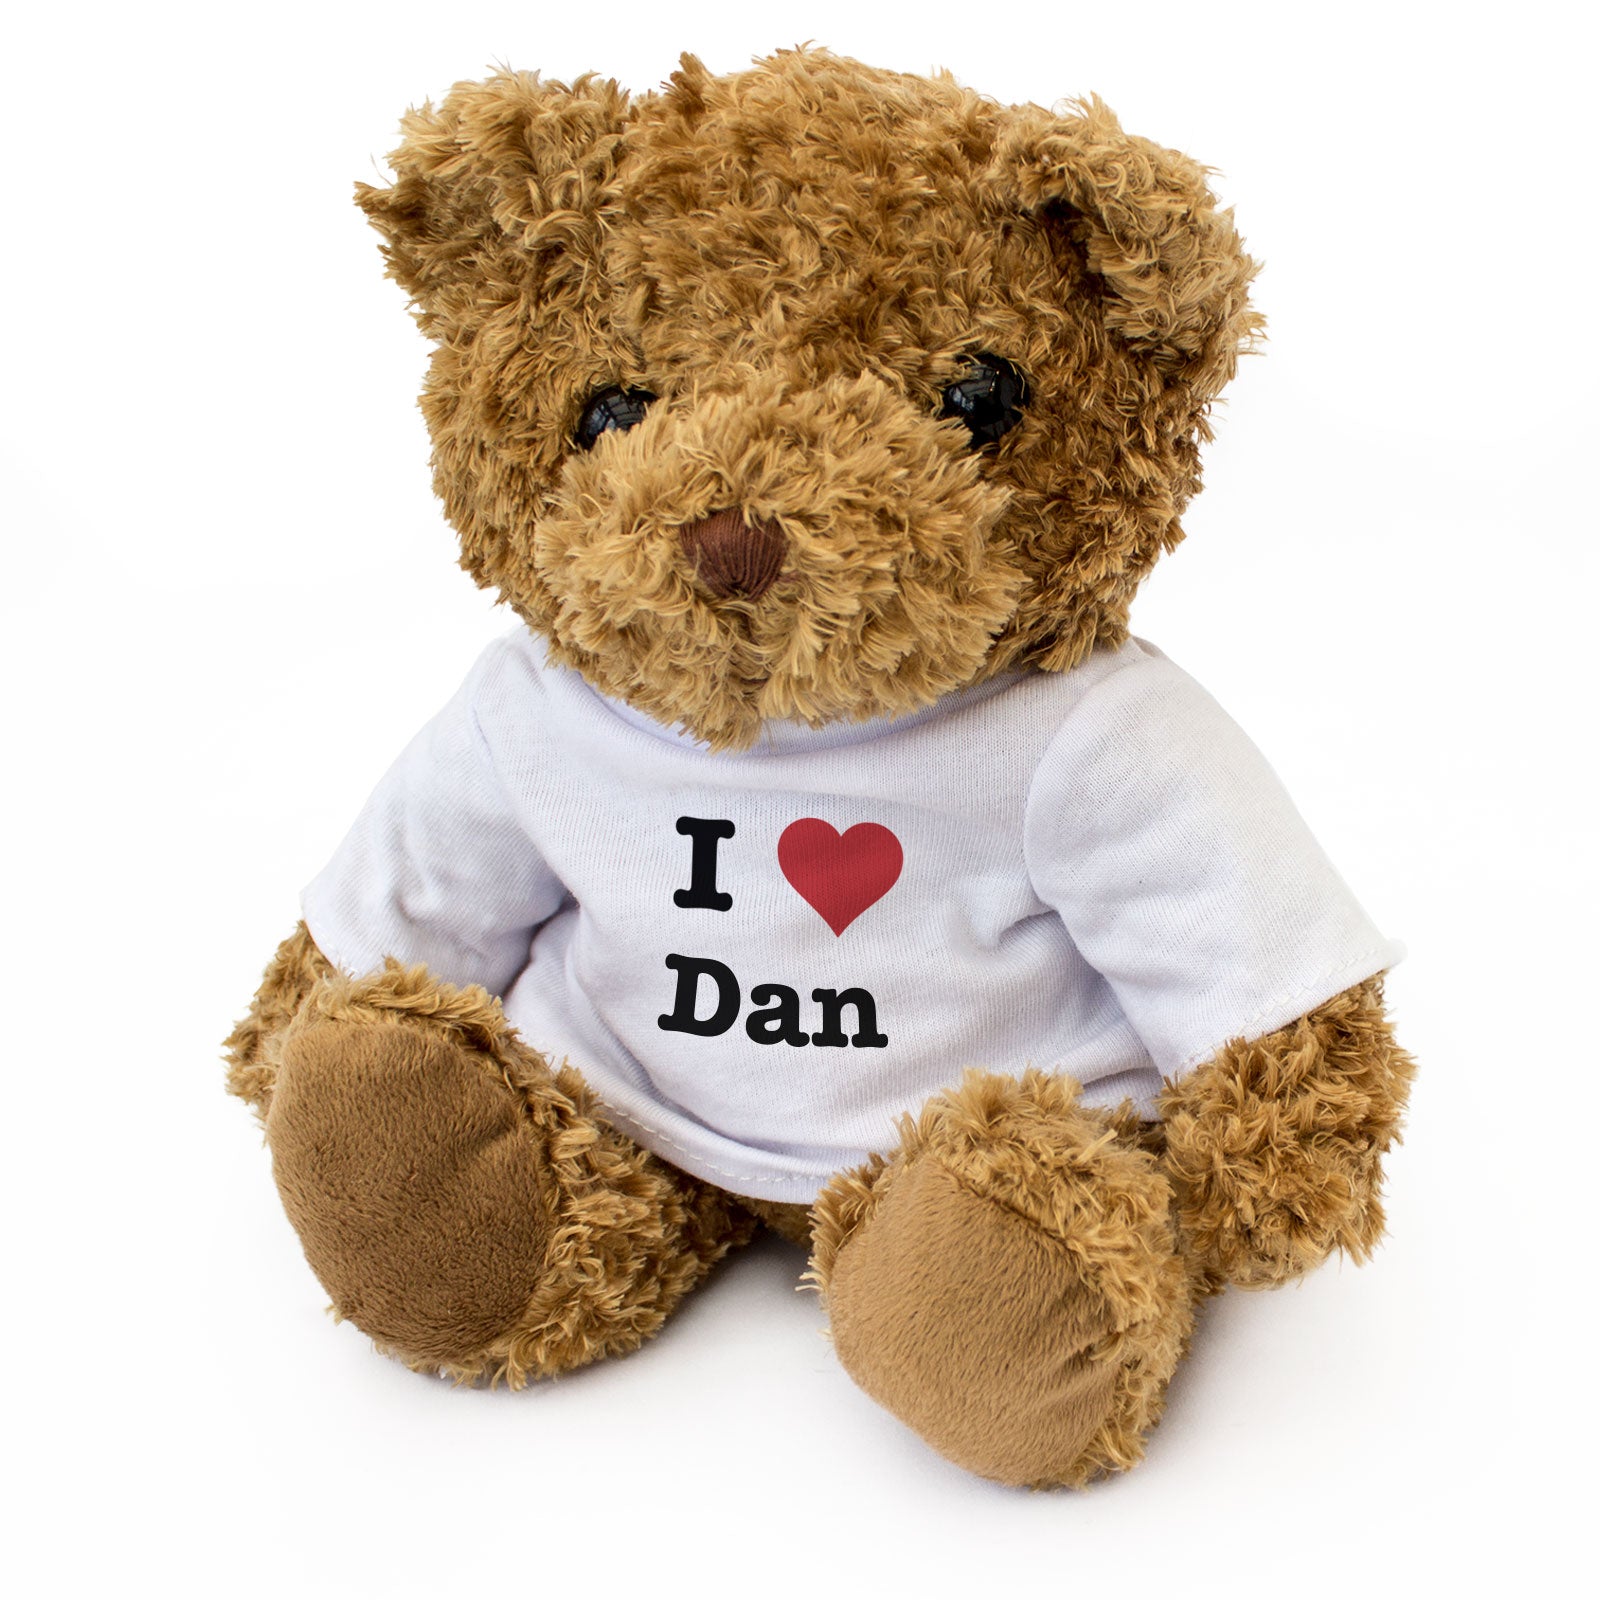 I Love Dan - Teddy Bear